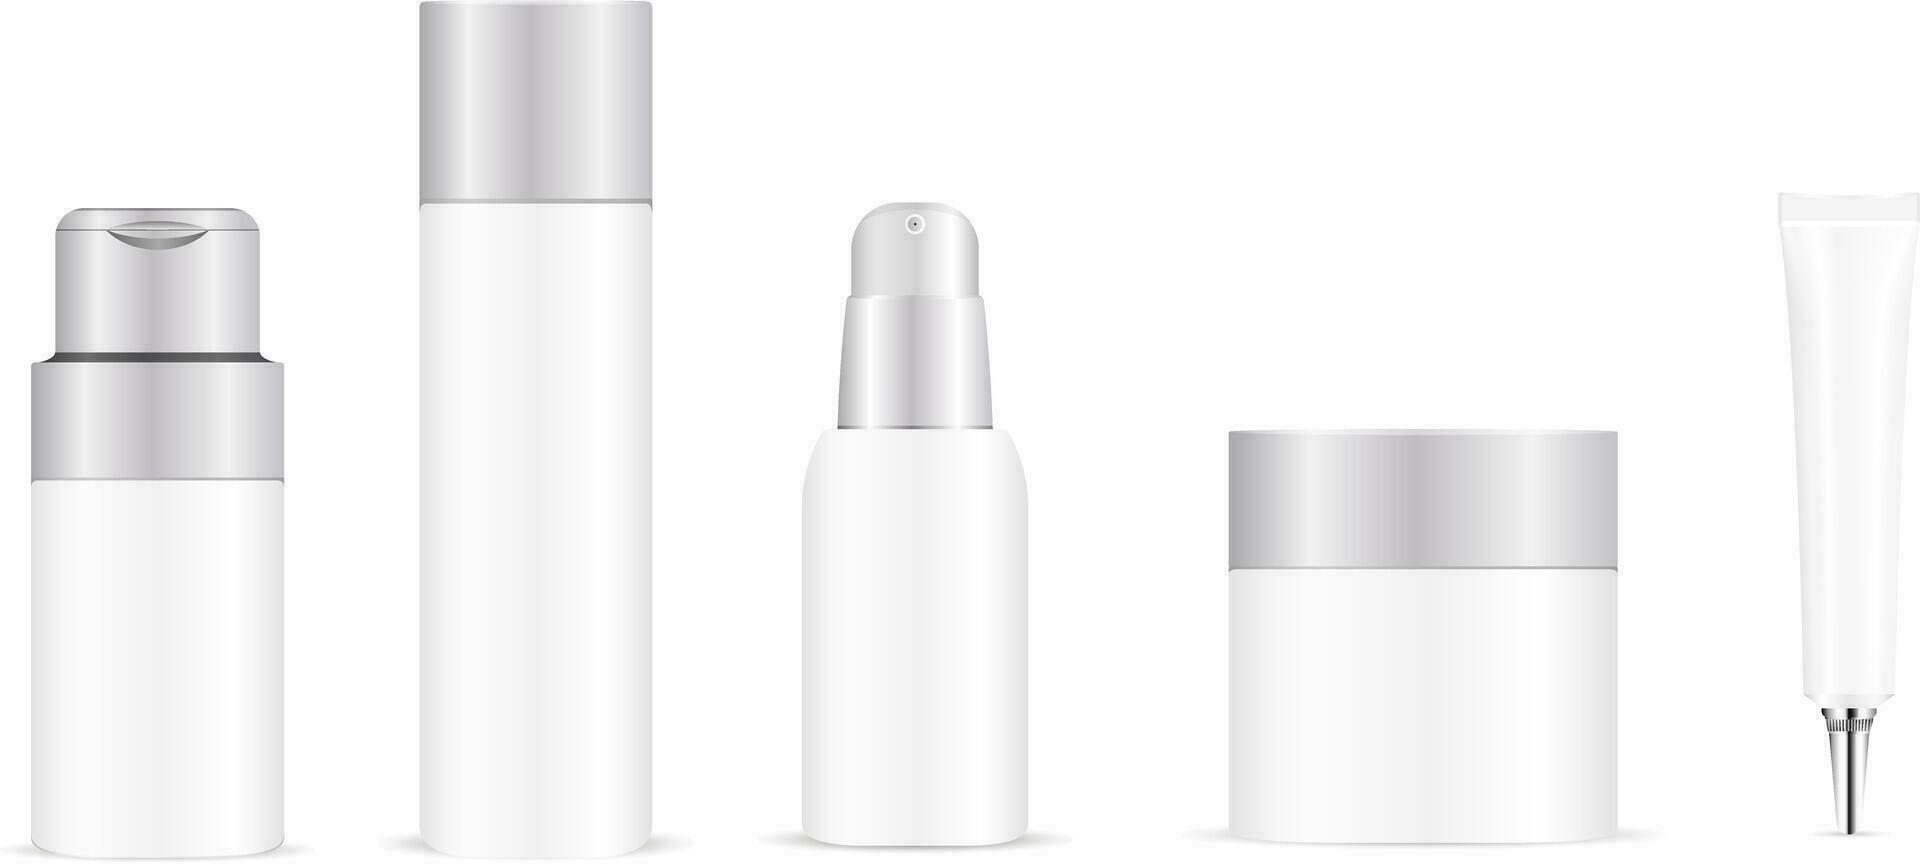 vit flaska attrapp mall för hår vård eller hud vård Produkter. vektor illustration uppsättning.